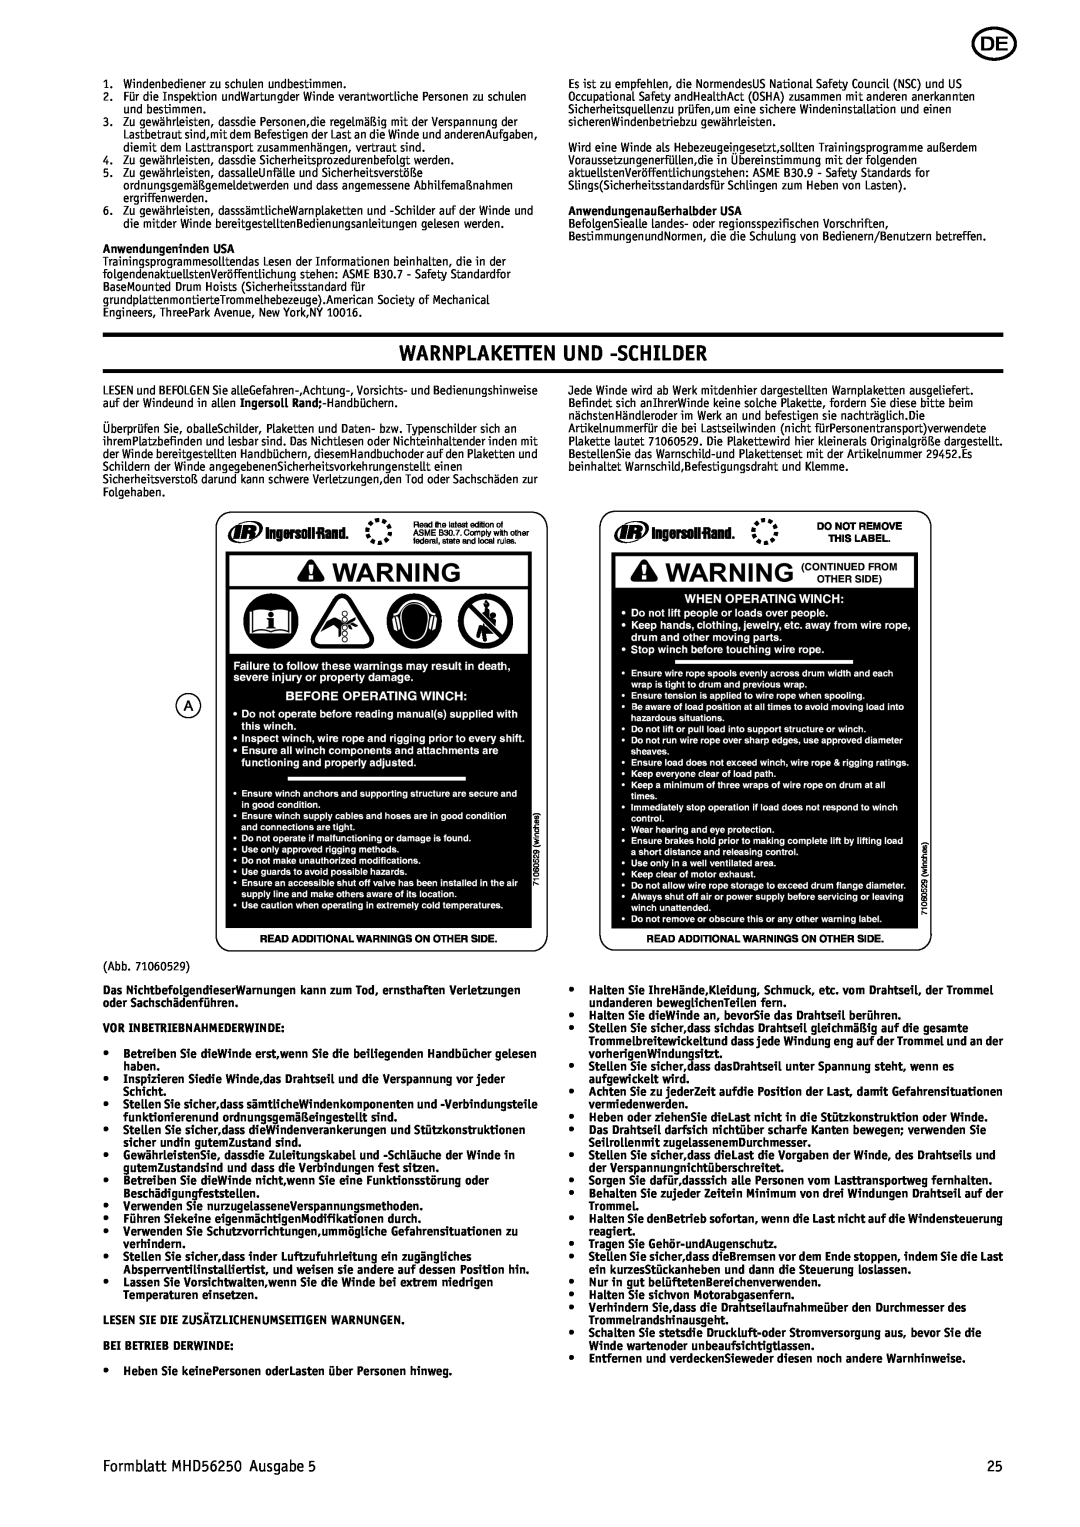 Ingersoll-Rand manual Warnplaketten Und -Schilder, Formblatt MHD56250 Ausgabe 